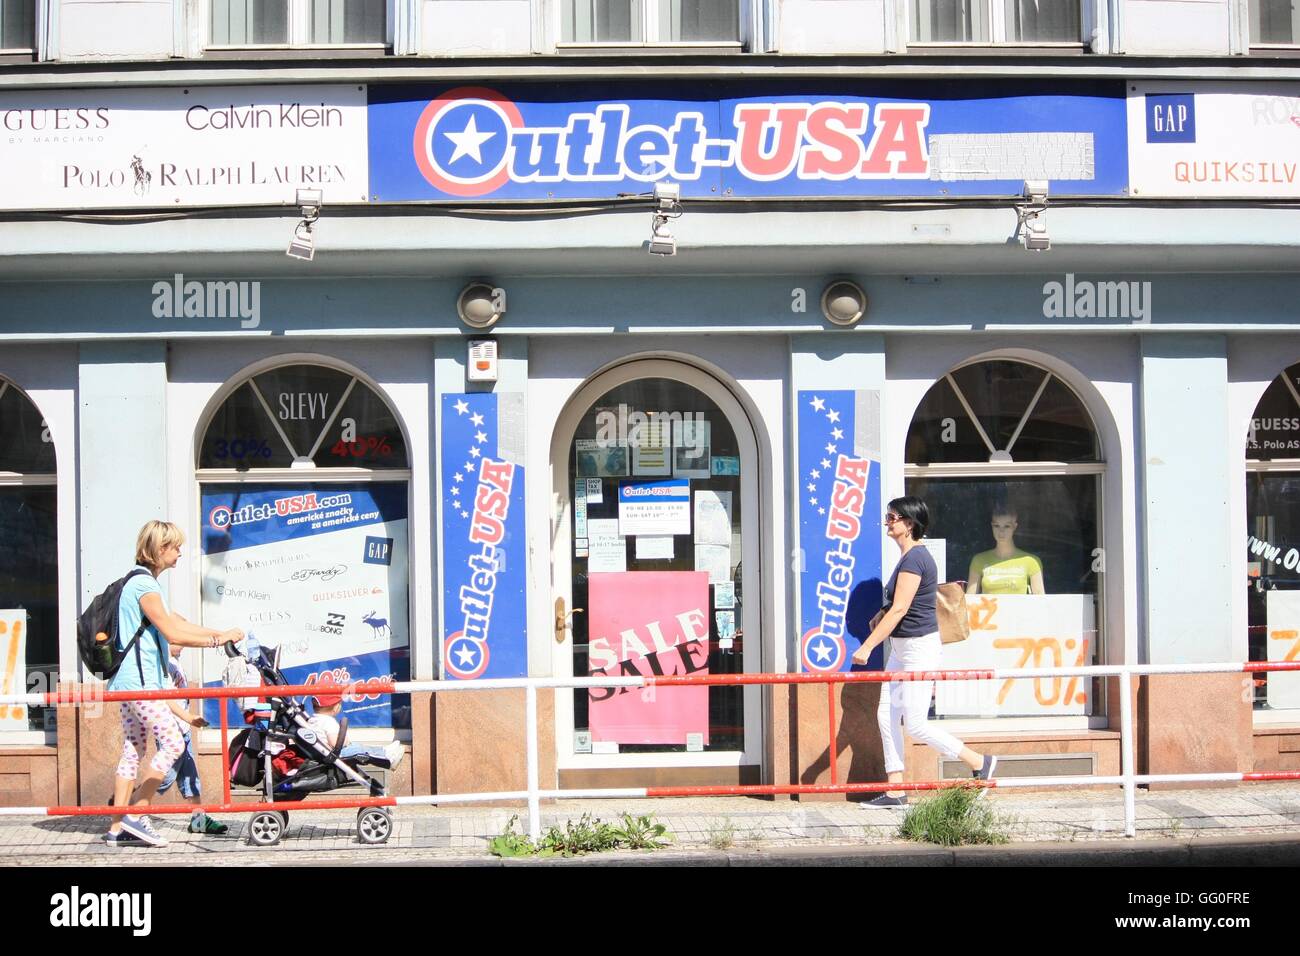 Vista de la calle de tienda outlet americano en Praga Fotografía de stock -  Alamy